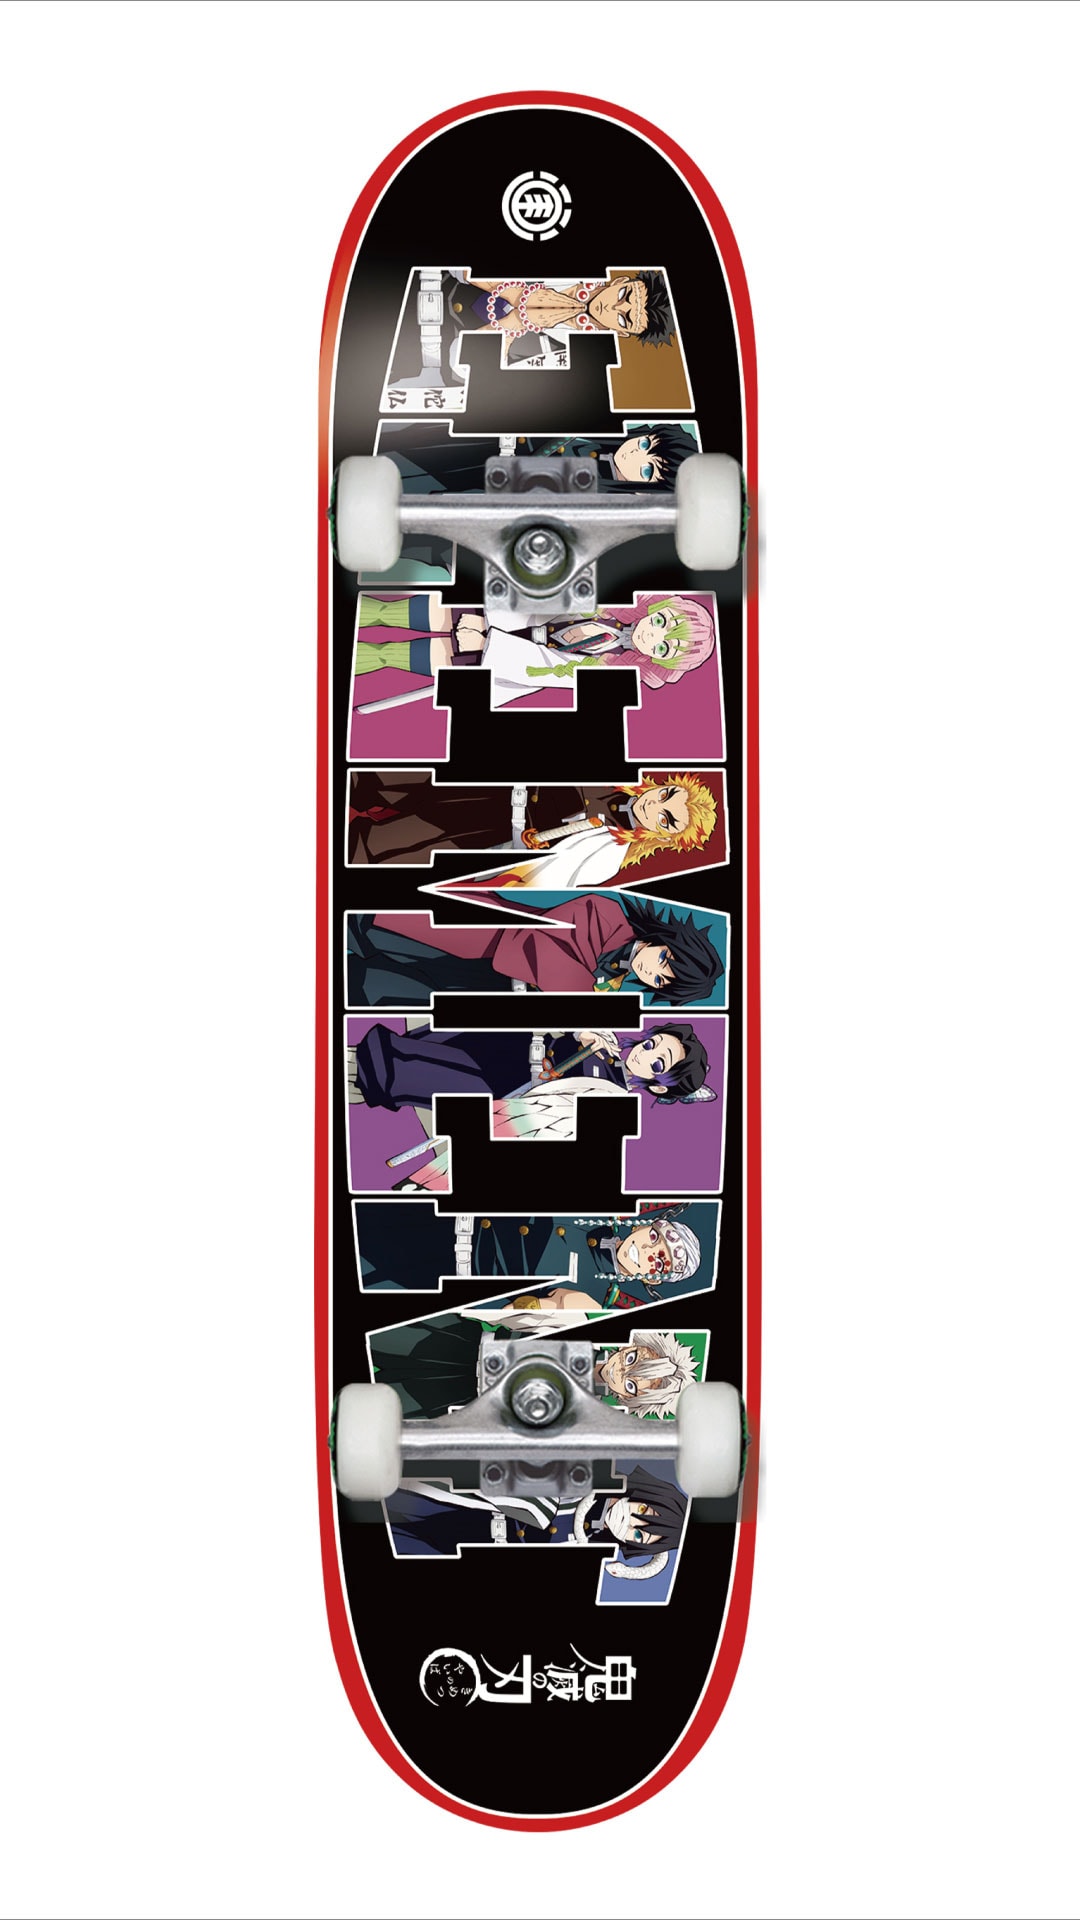 『鬼滅の刃』 x エレメント Element Skateboards のスケートデッキがリリース 